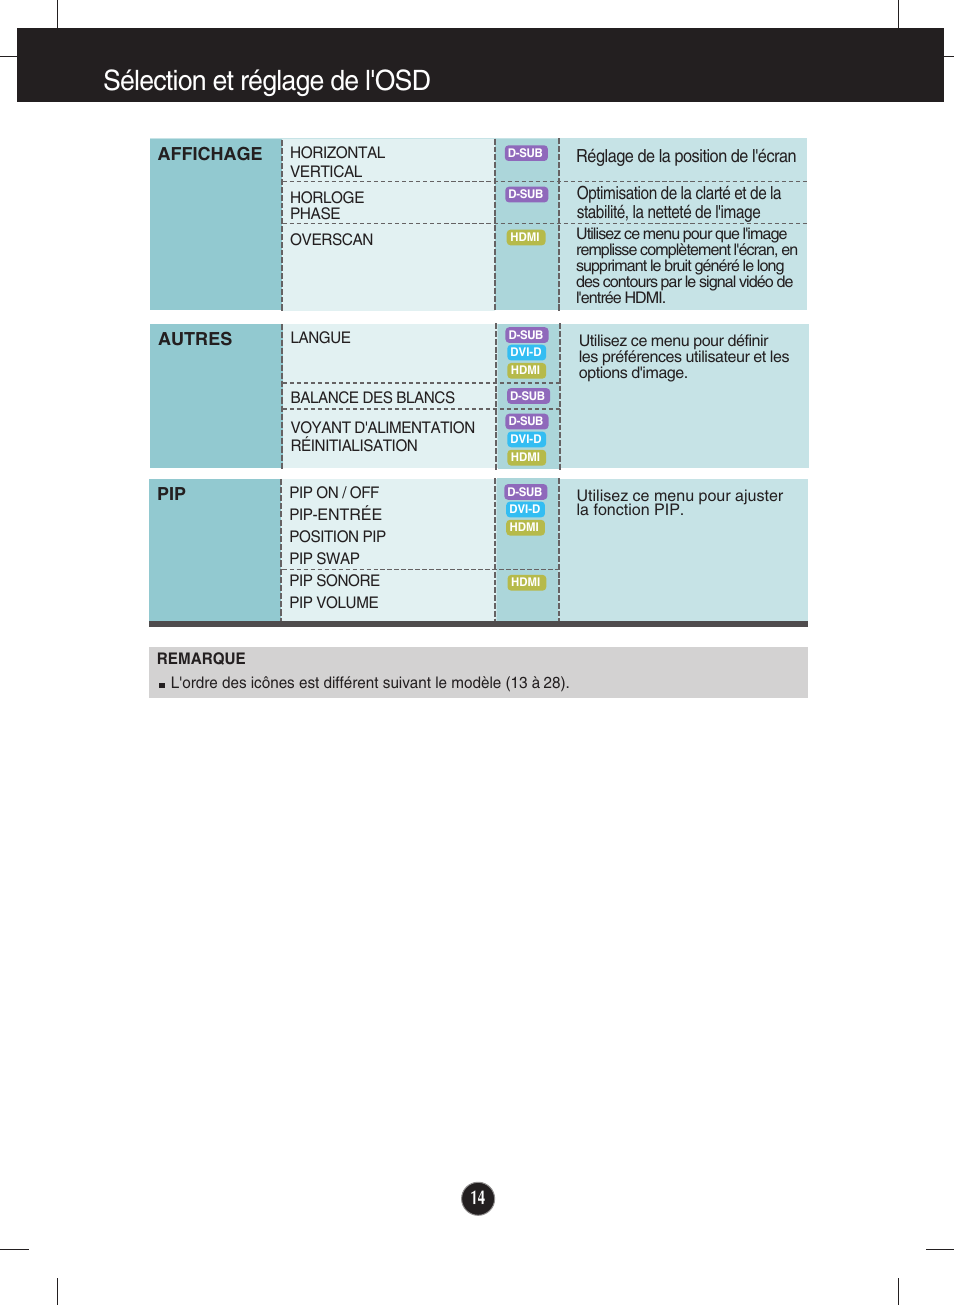 Sélection et réglage de l'osd | LG E2770V-BF Manuel d'utilisation | Page 15 / 38